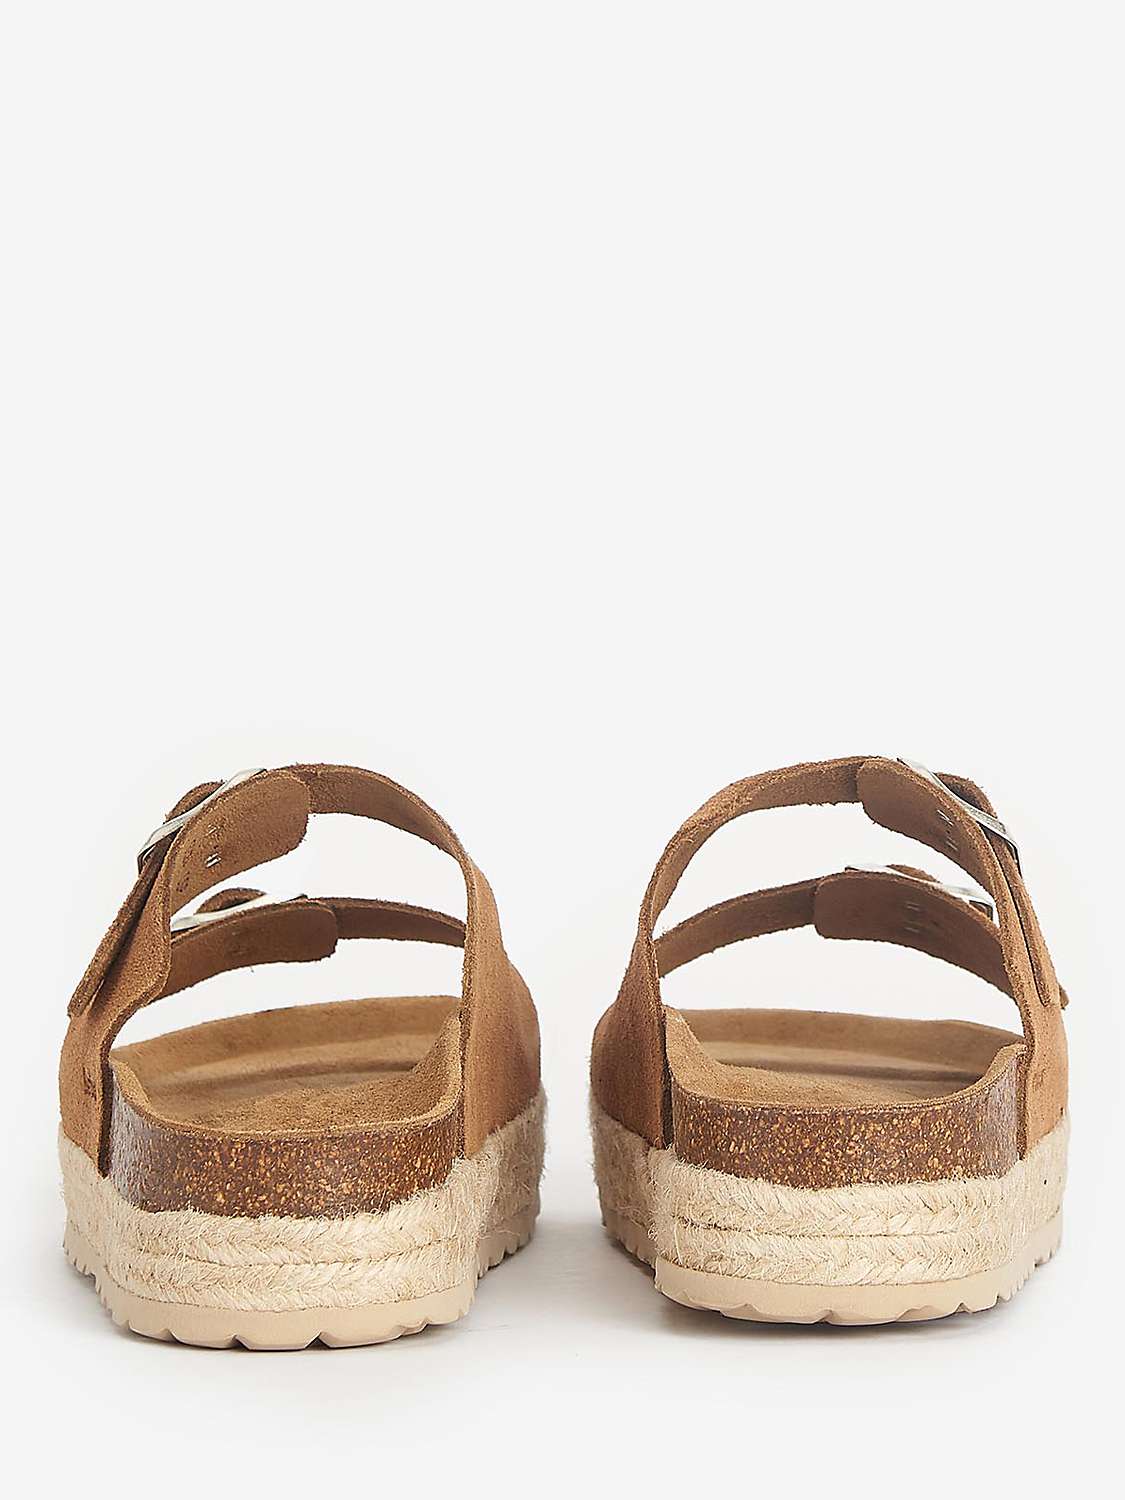 Buy Barbour Sandgate Suede Footbed Sandals Online at johnlewis.com